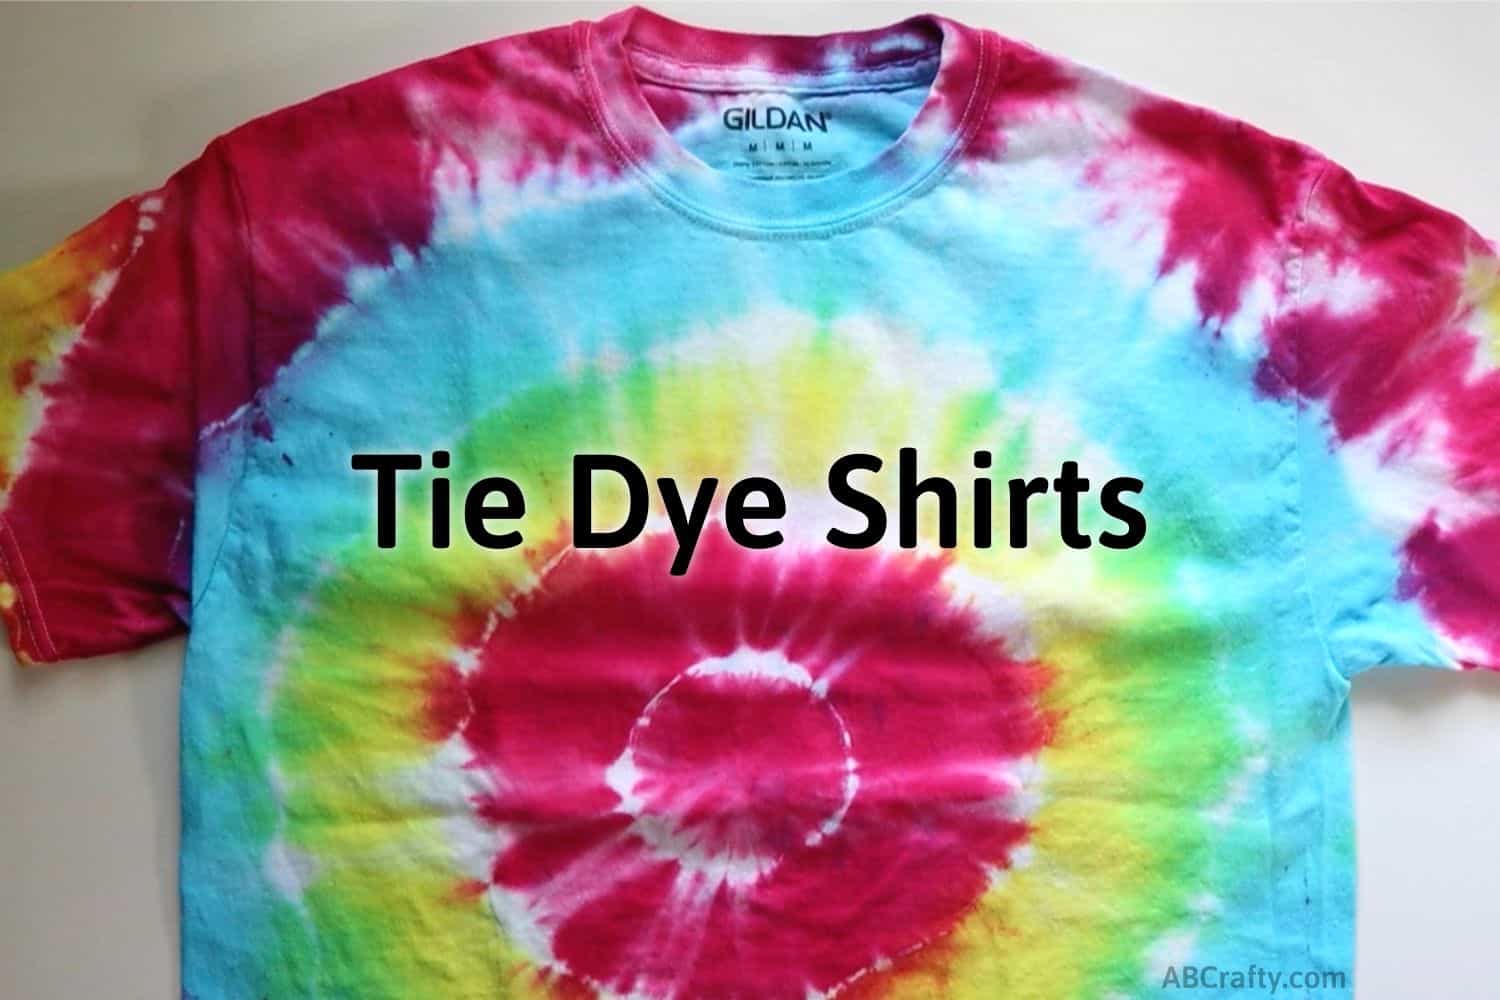 Understanding the Tie Dye Process